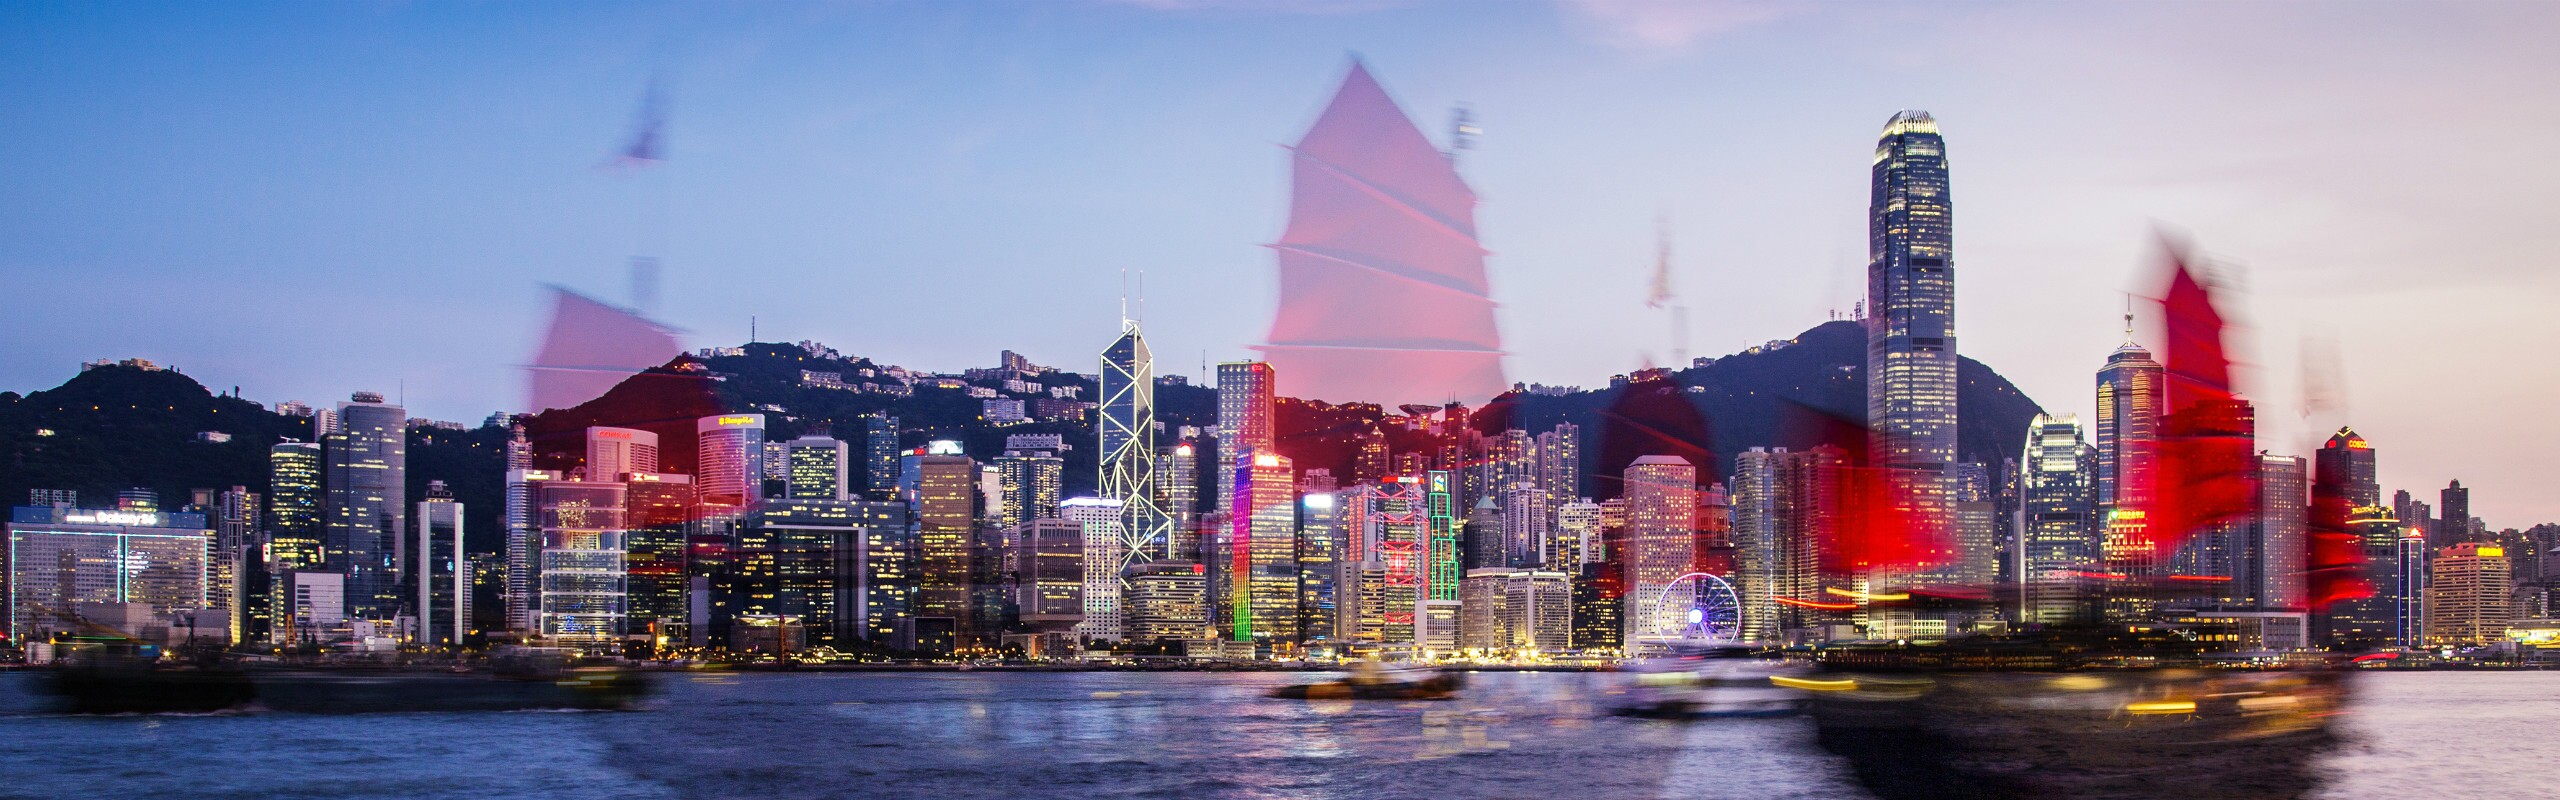 10 Top China Tours from Hong Kong